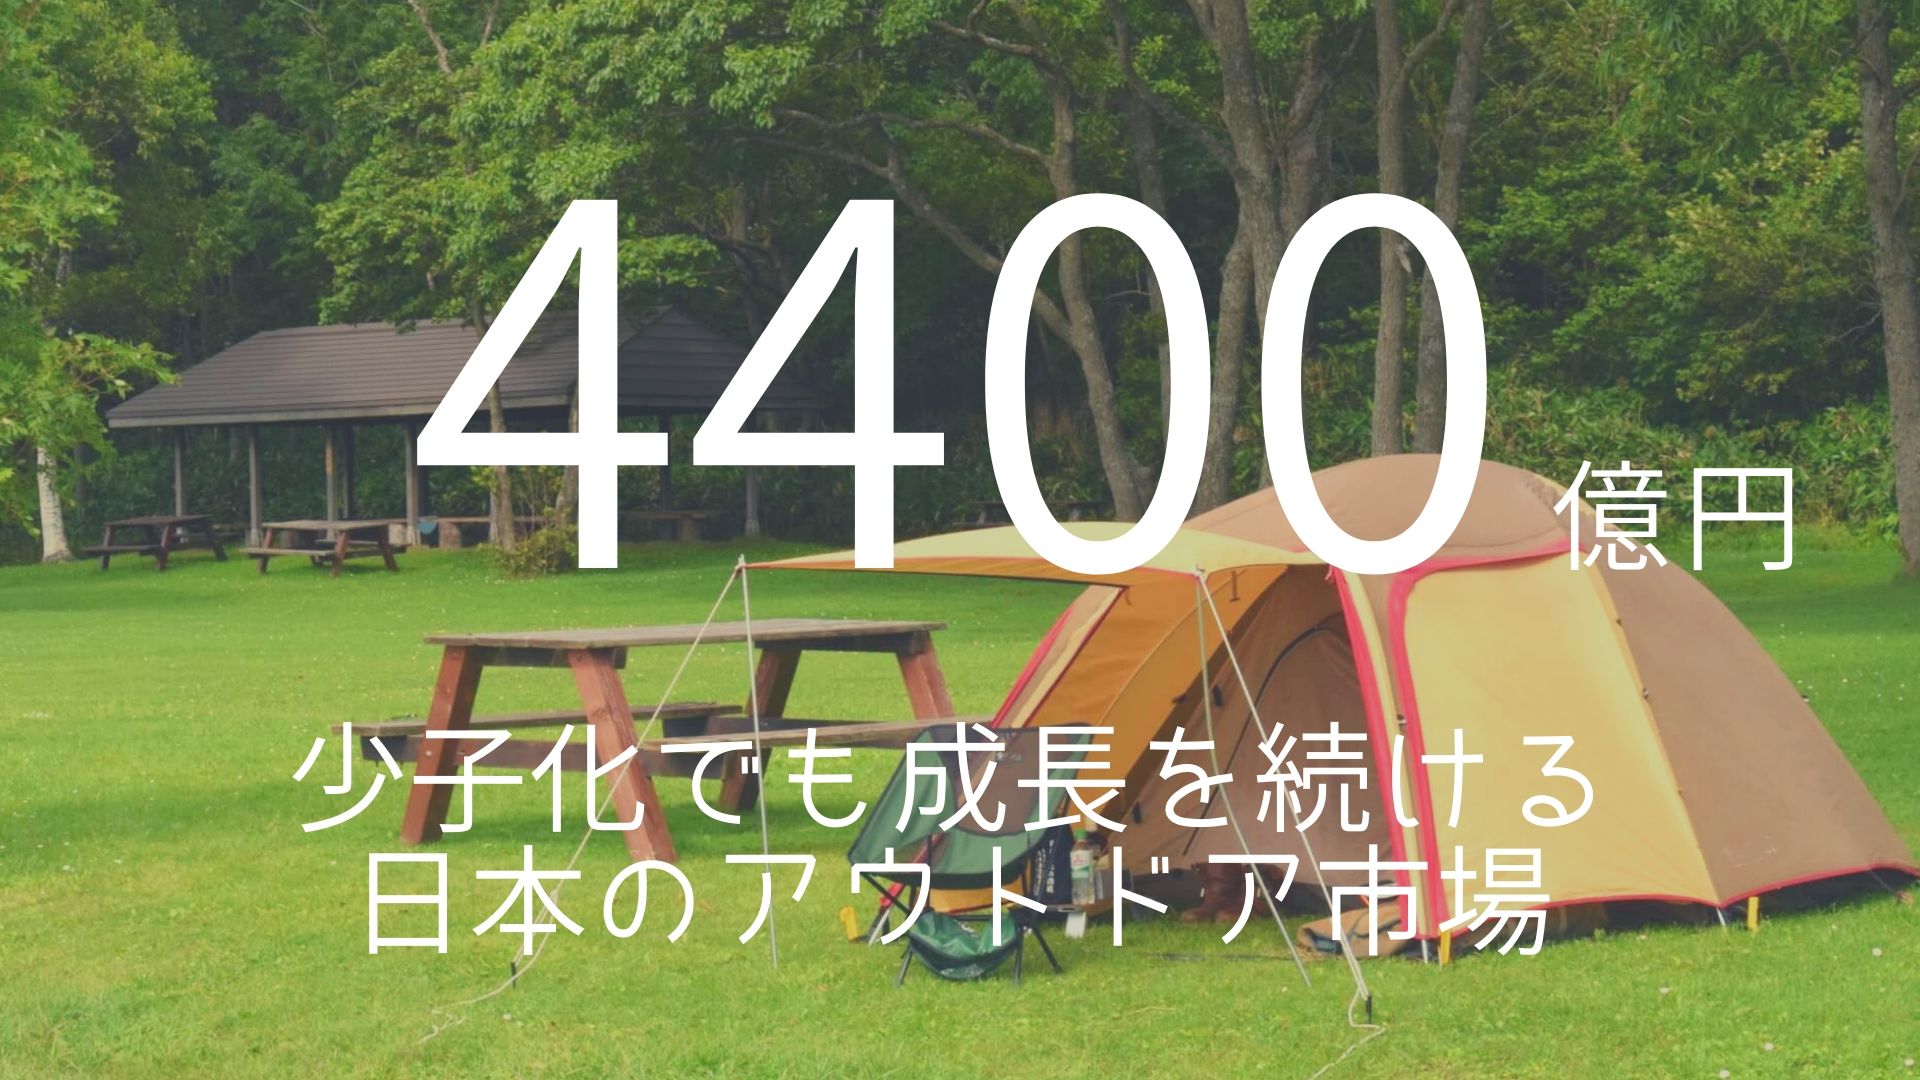 「4400億円」 >>> 少子化でも成長を続ける日本のアウトドア市場。